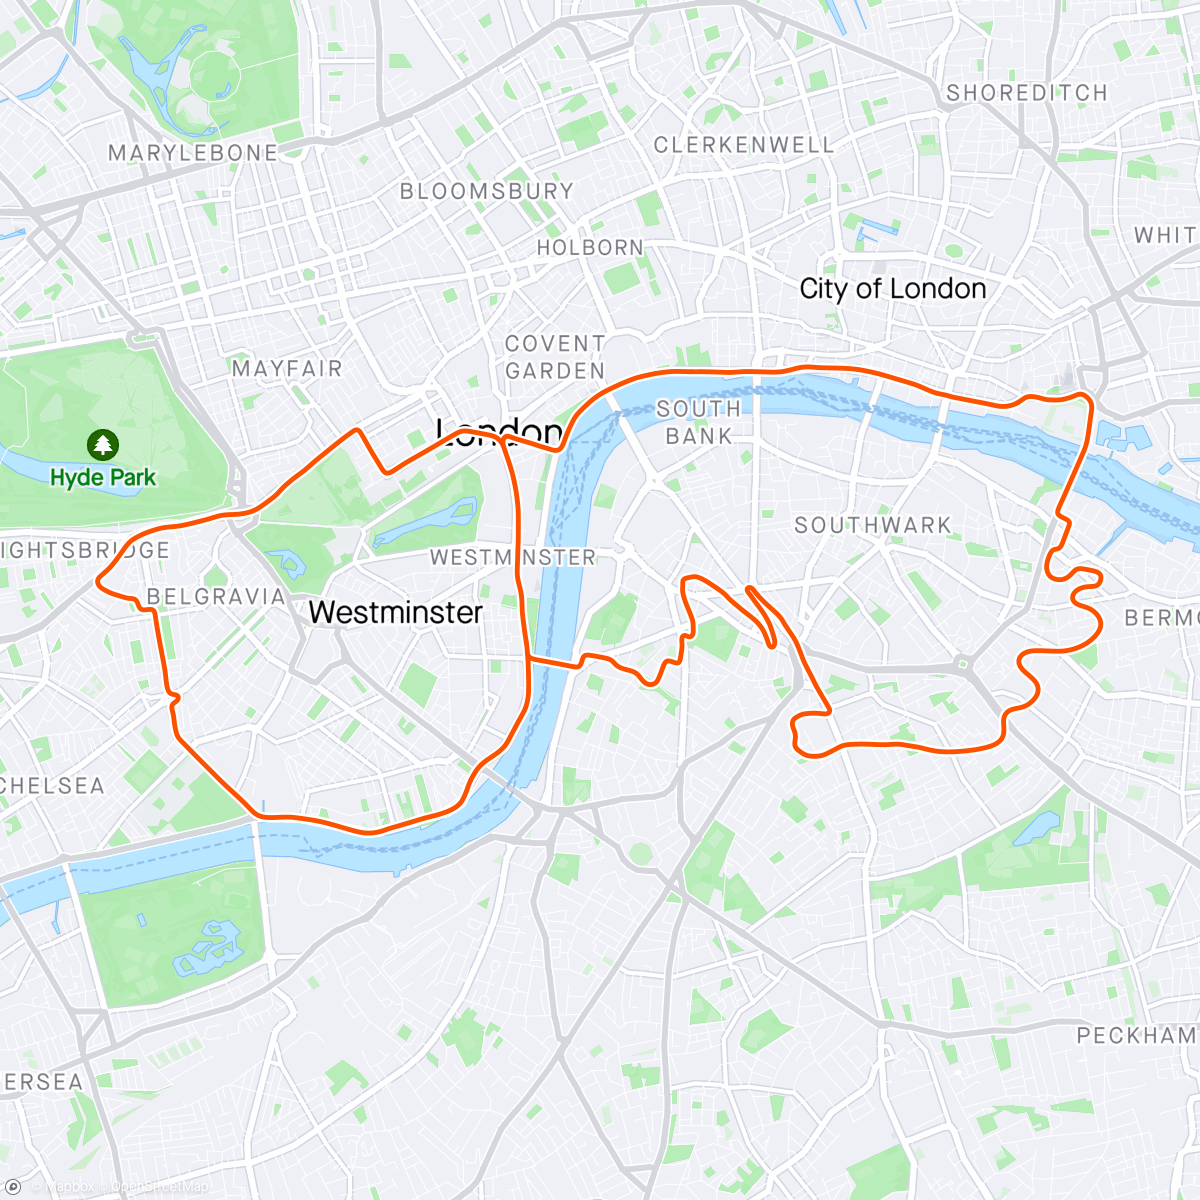 「Zwift - Greater London 8 in London」活動的地圖